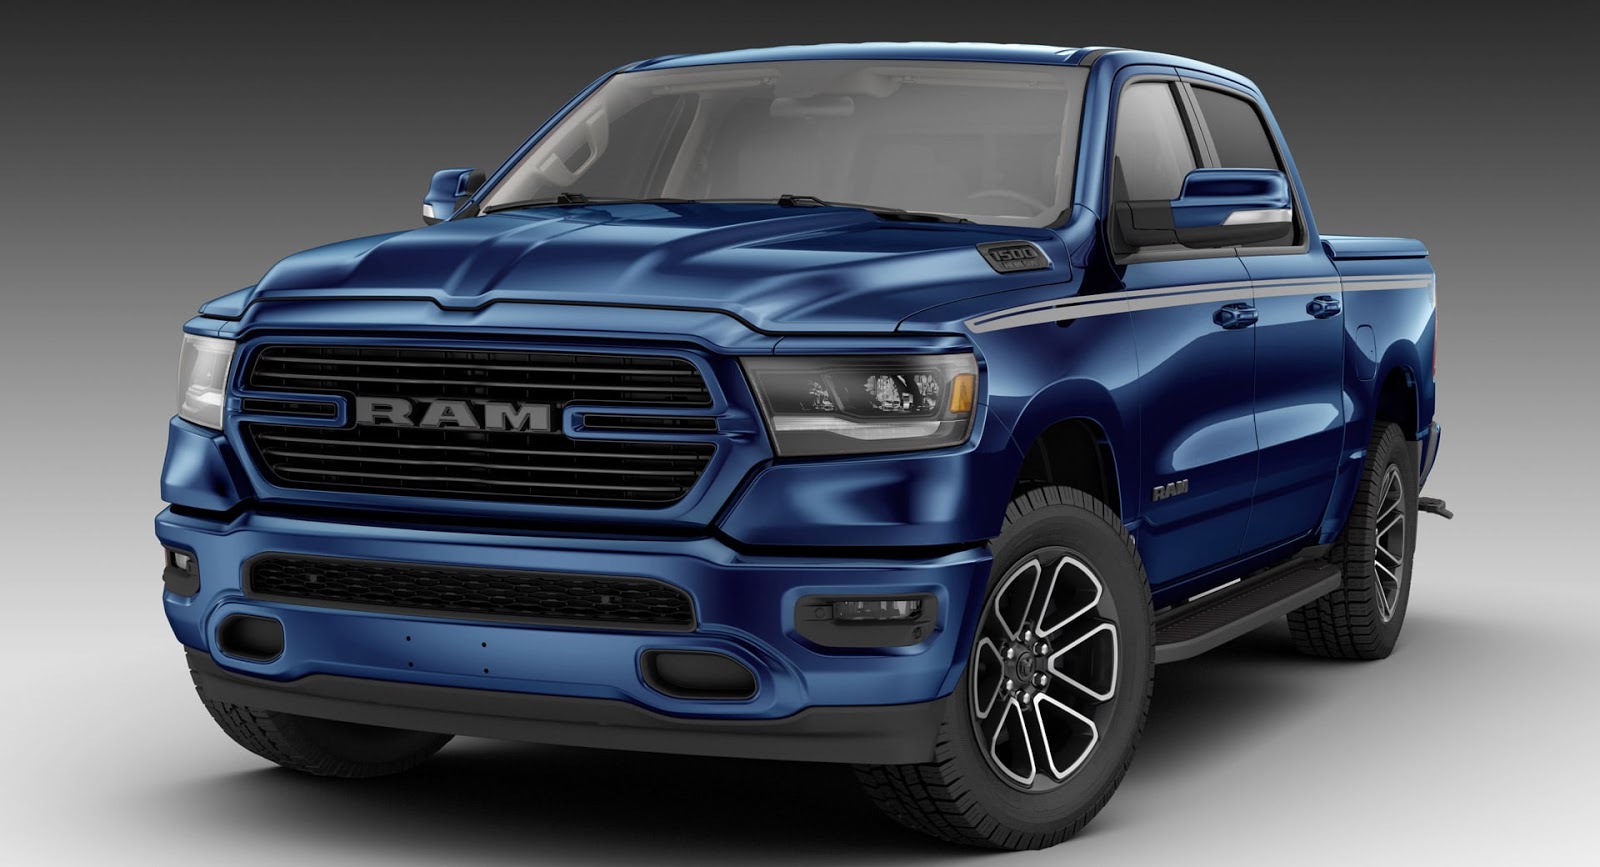 2019 Ram 1500 Looks Boss All Mopar'd Out In Patriot Blue - car news